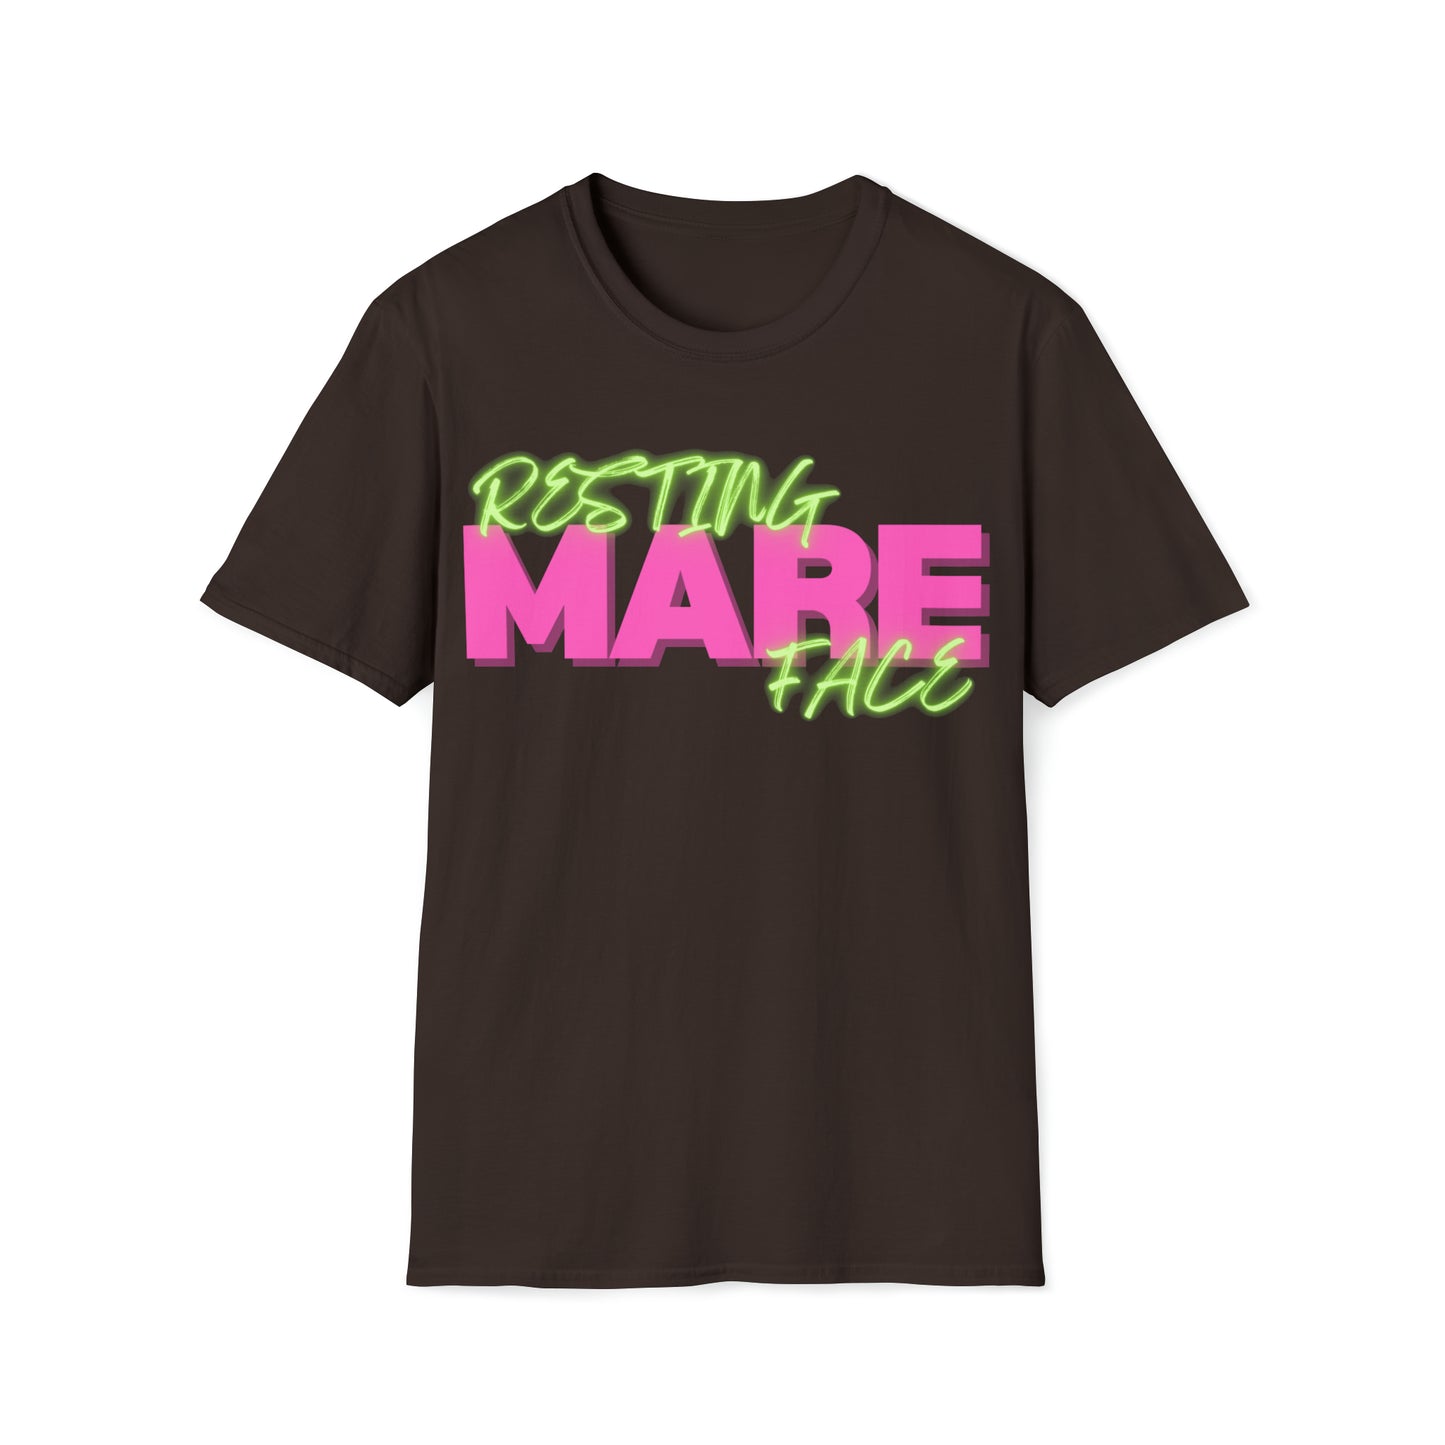 Resting Mare Face shirt t-shirt - unisex short sleeve t-shirt